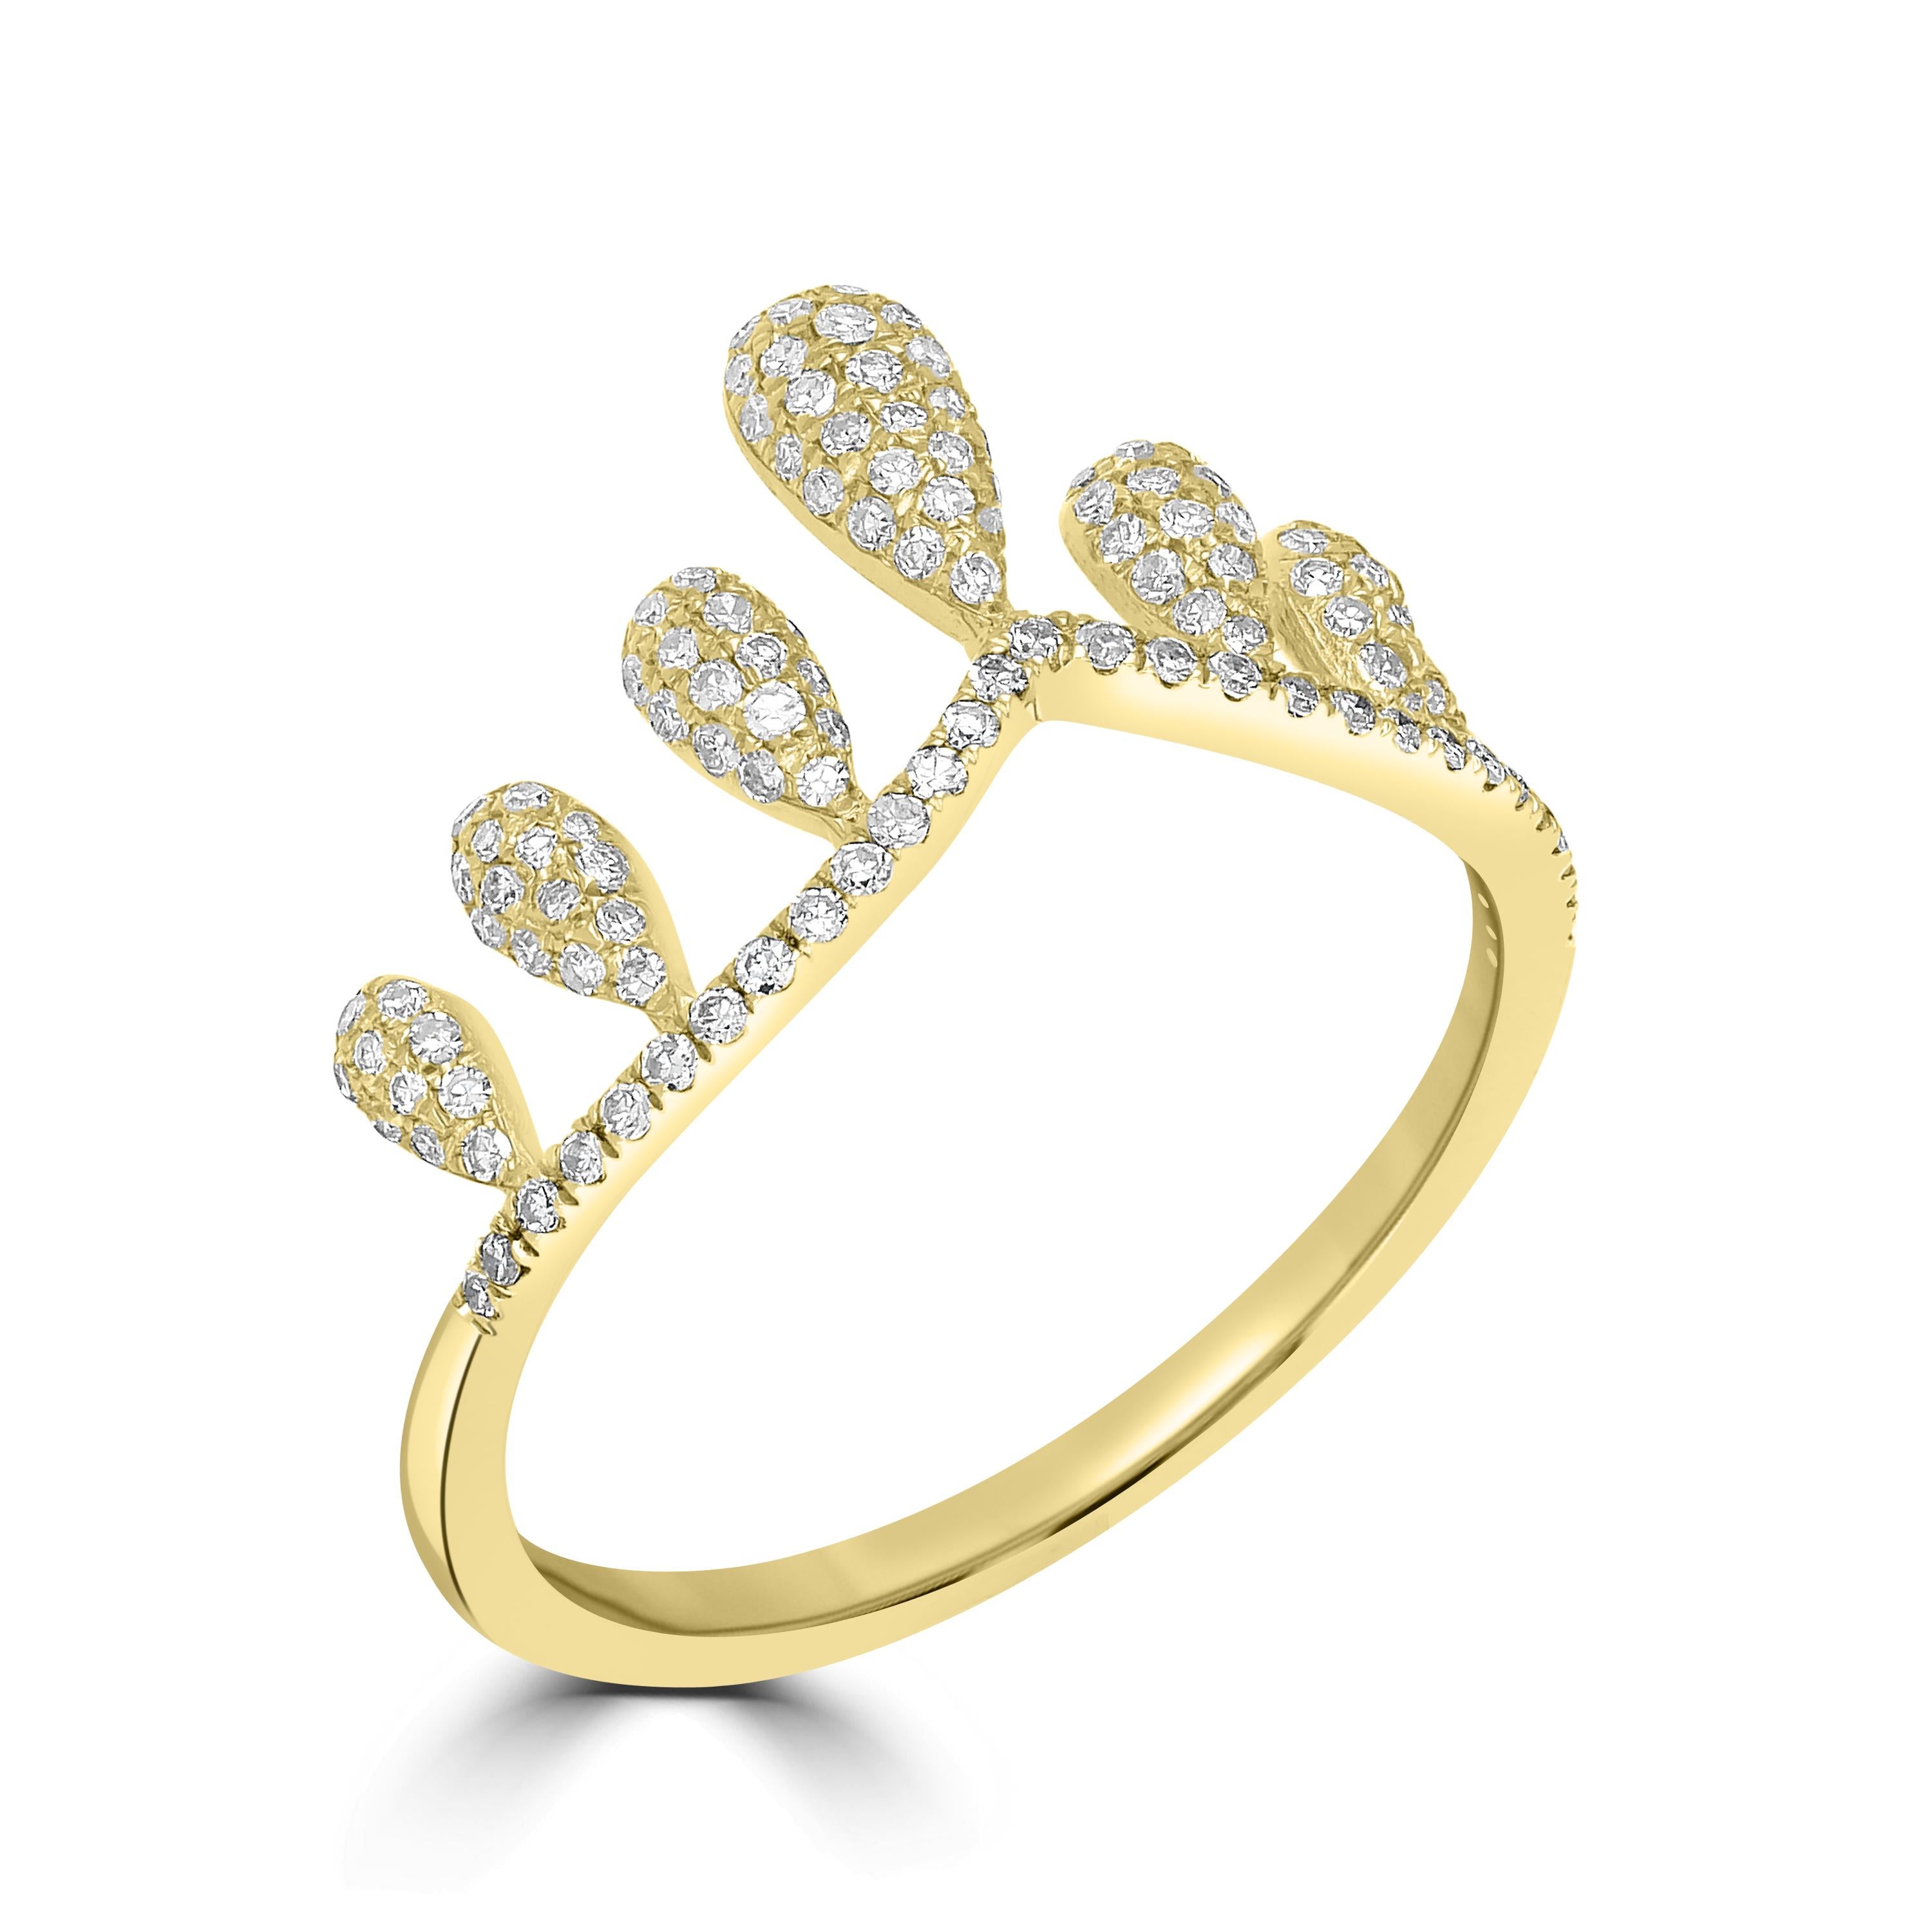 Cette superbe bague à diamant couronne est réalisée en or jaune 14 carats et est empreinte de grâce. Cette bague Luxle est sertie de 0,38 ct de diamants ronds à taille unique et est encadrée dans un style couronne pour briller sur vos doigts. La